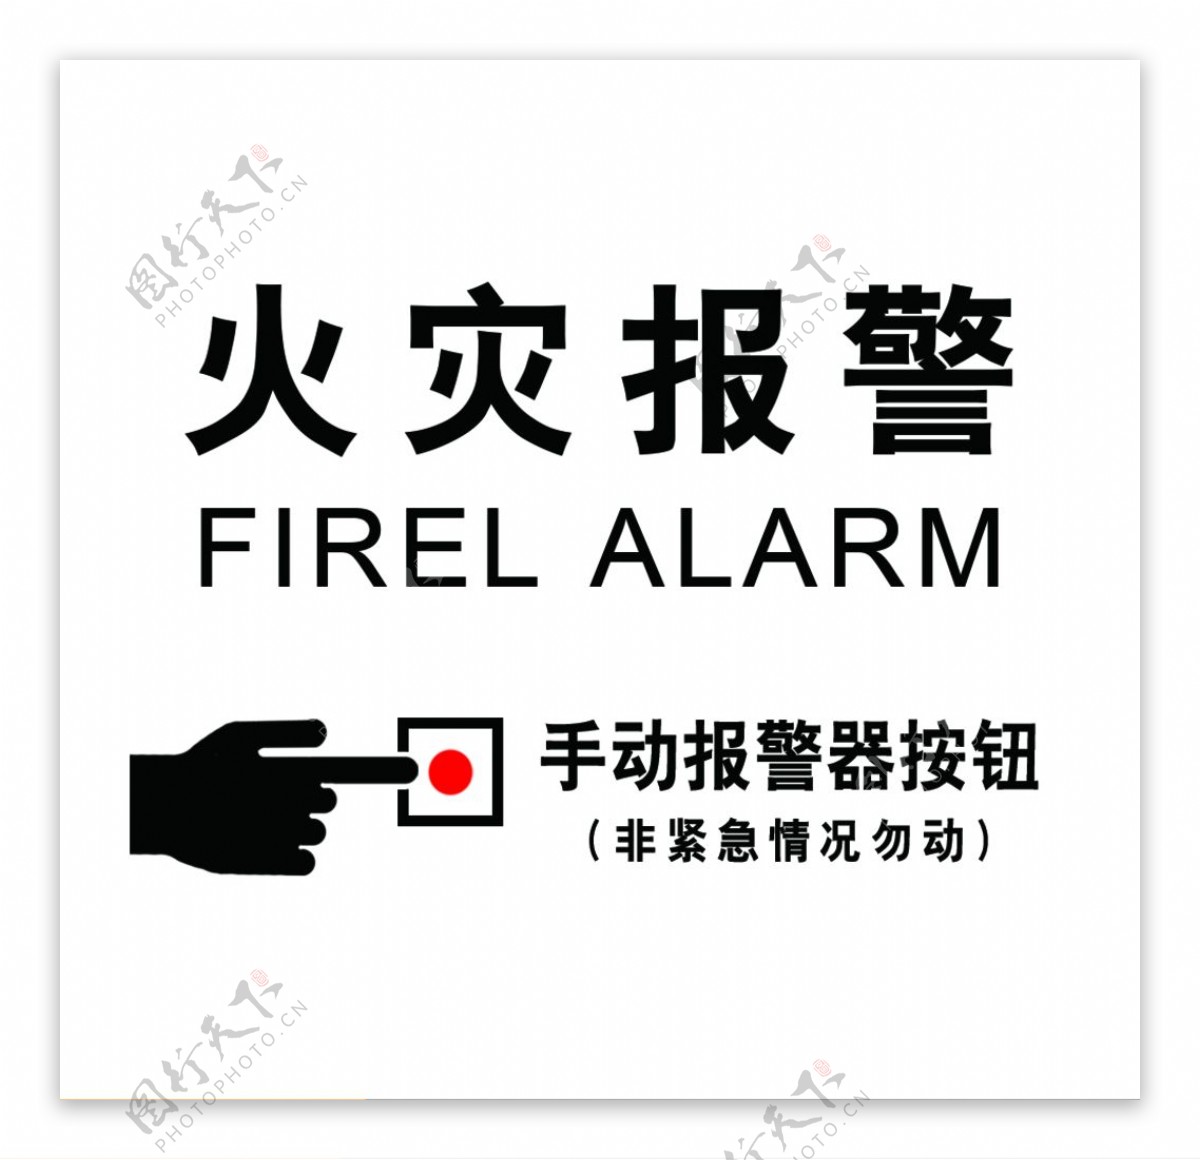 标牌标识火灾手报按钮